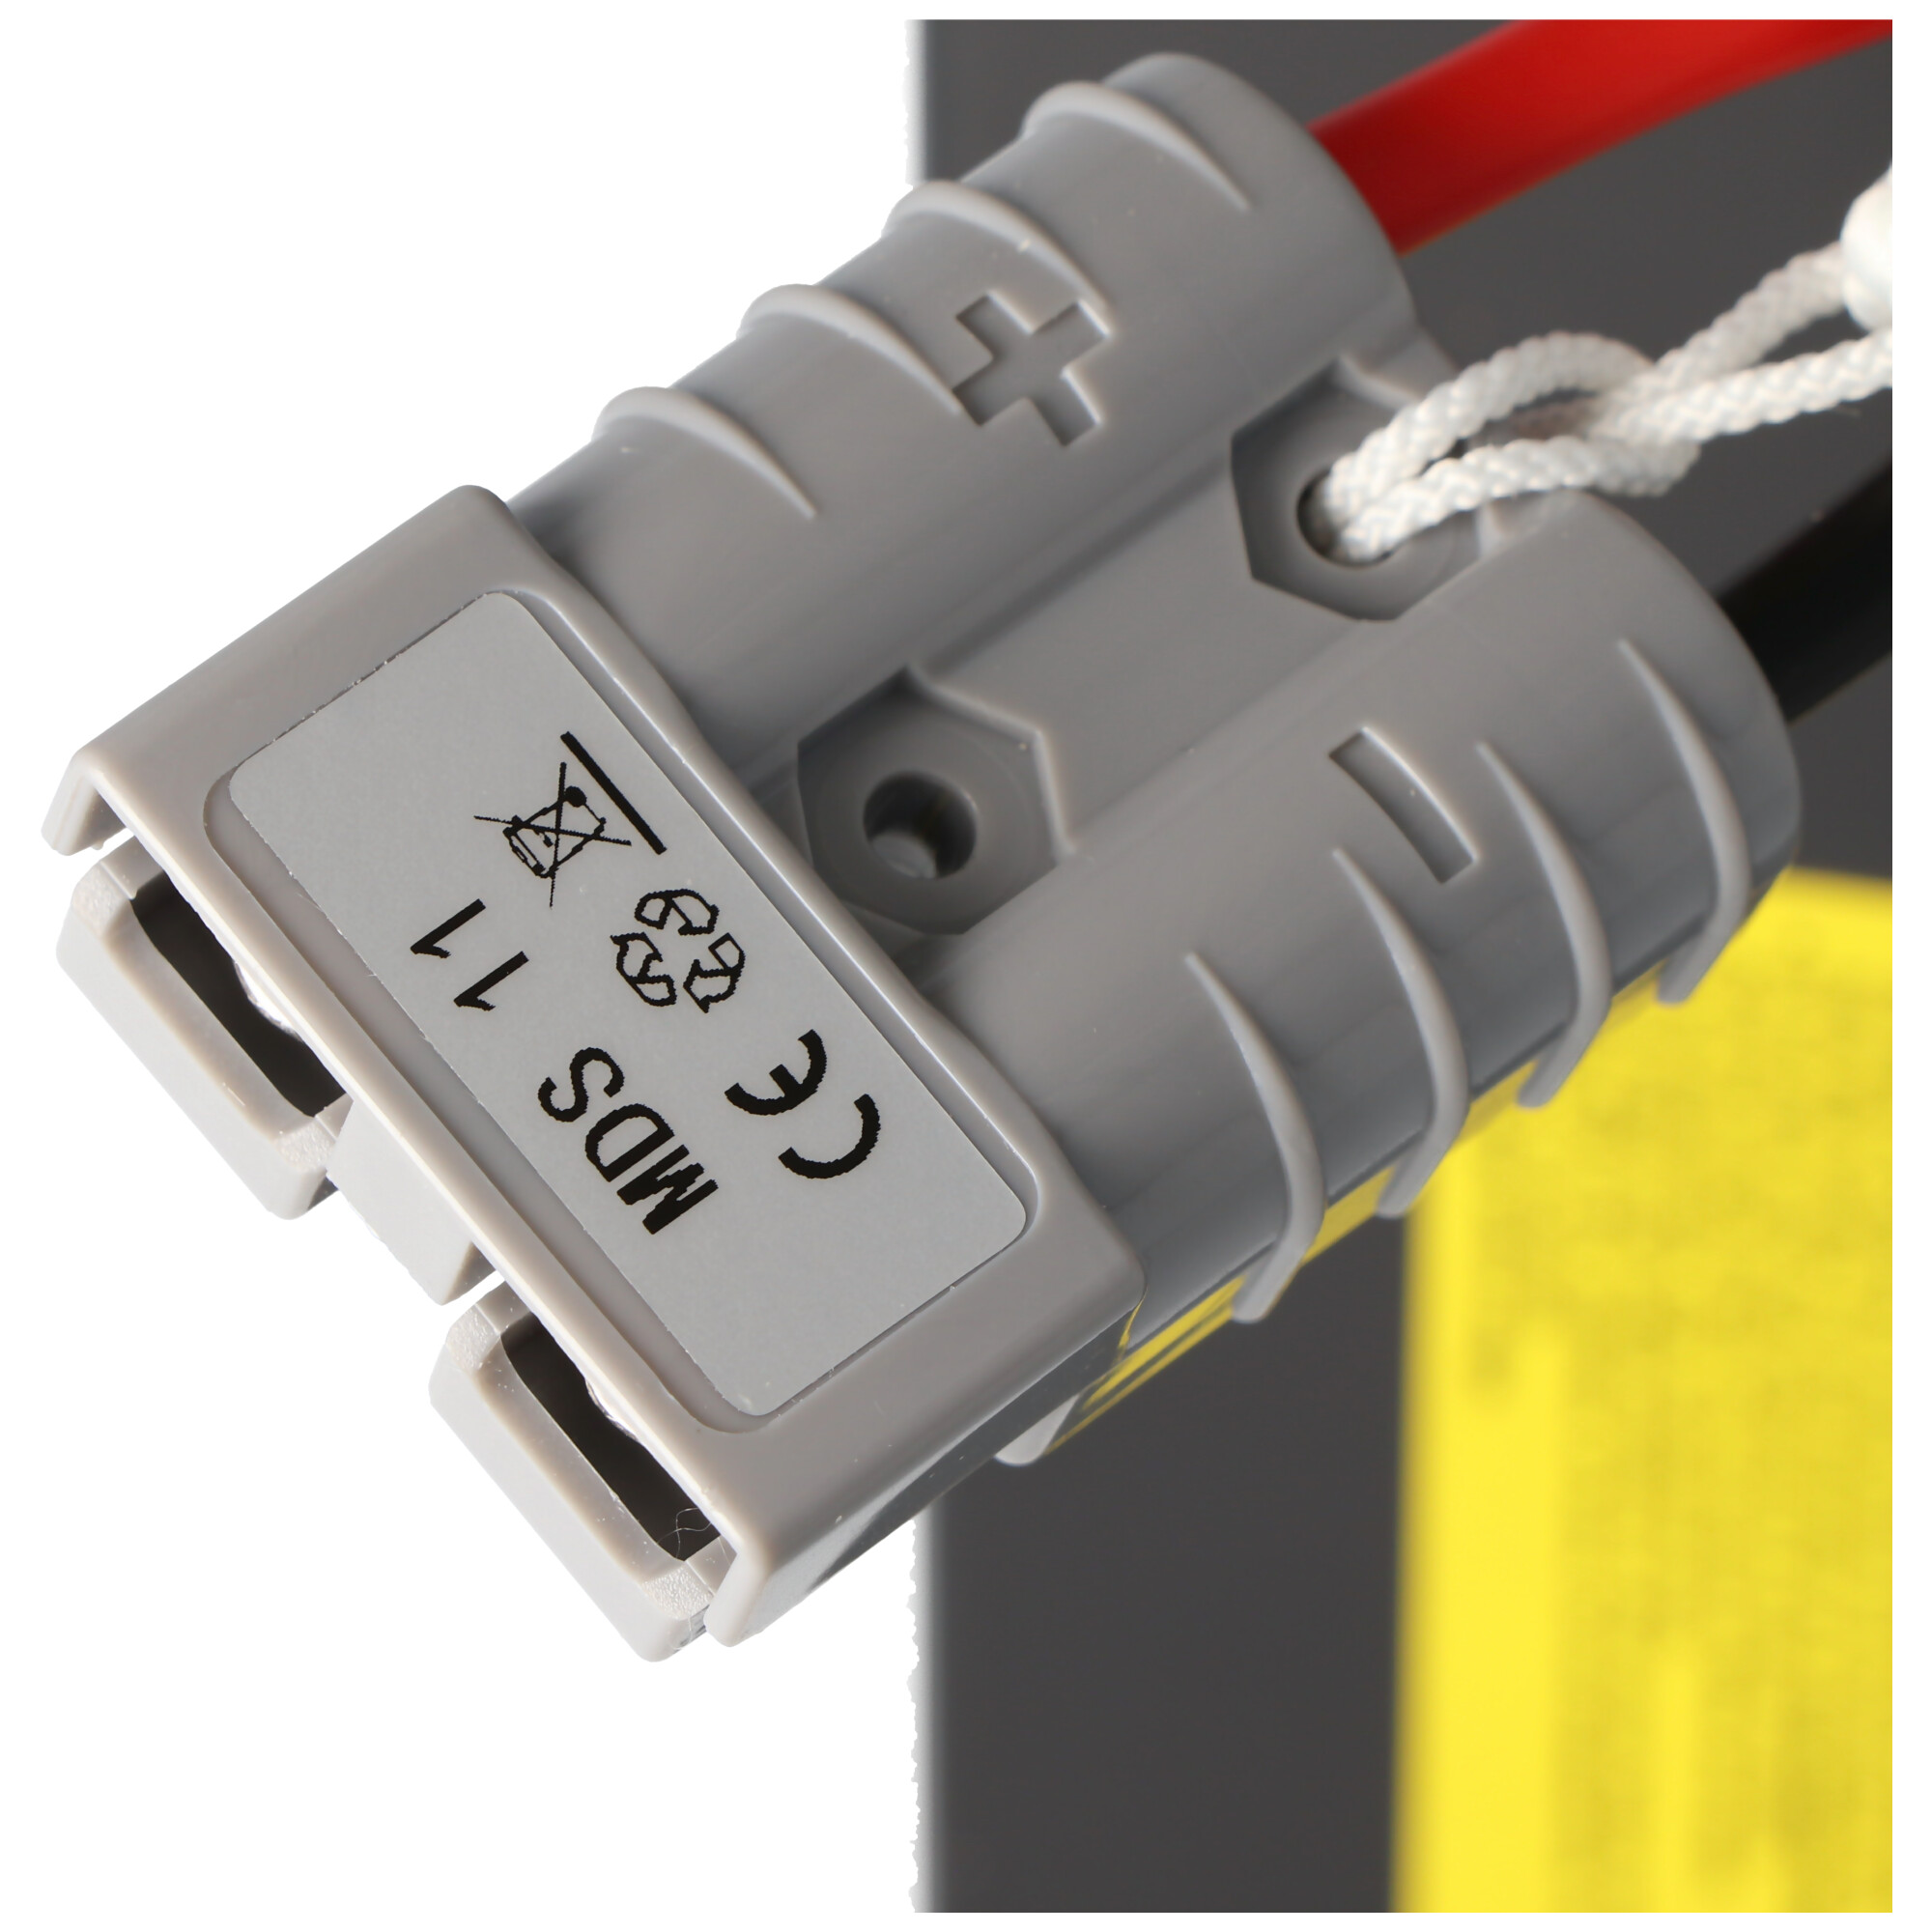 USV Ersatz-Akku, kompatibel zu APC-RBC7, SU1000XLJ, SU1400, DLA1500I, etc. vormontiert mit Kabel und Stecker, Akkuset bestehend aus 2x 2xGP12170